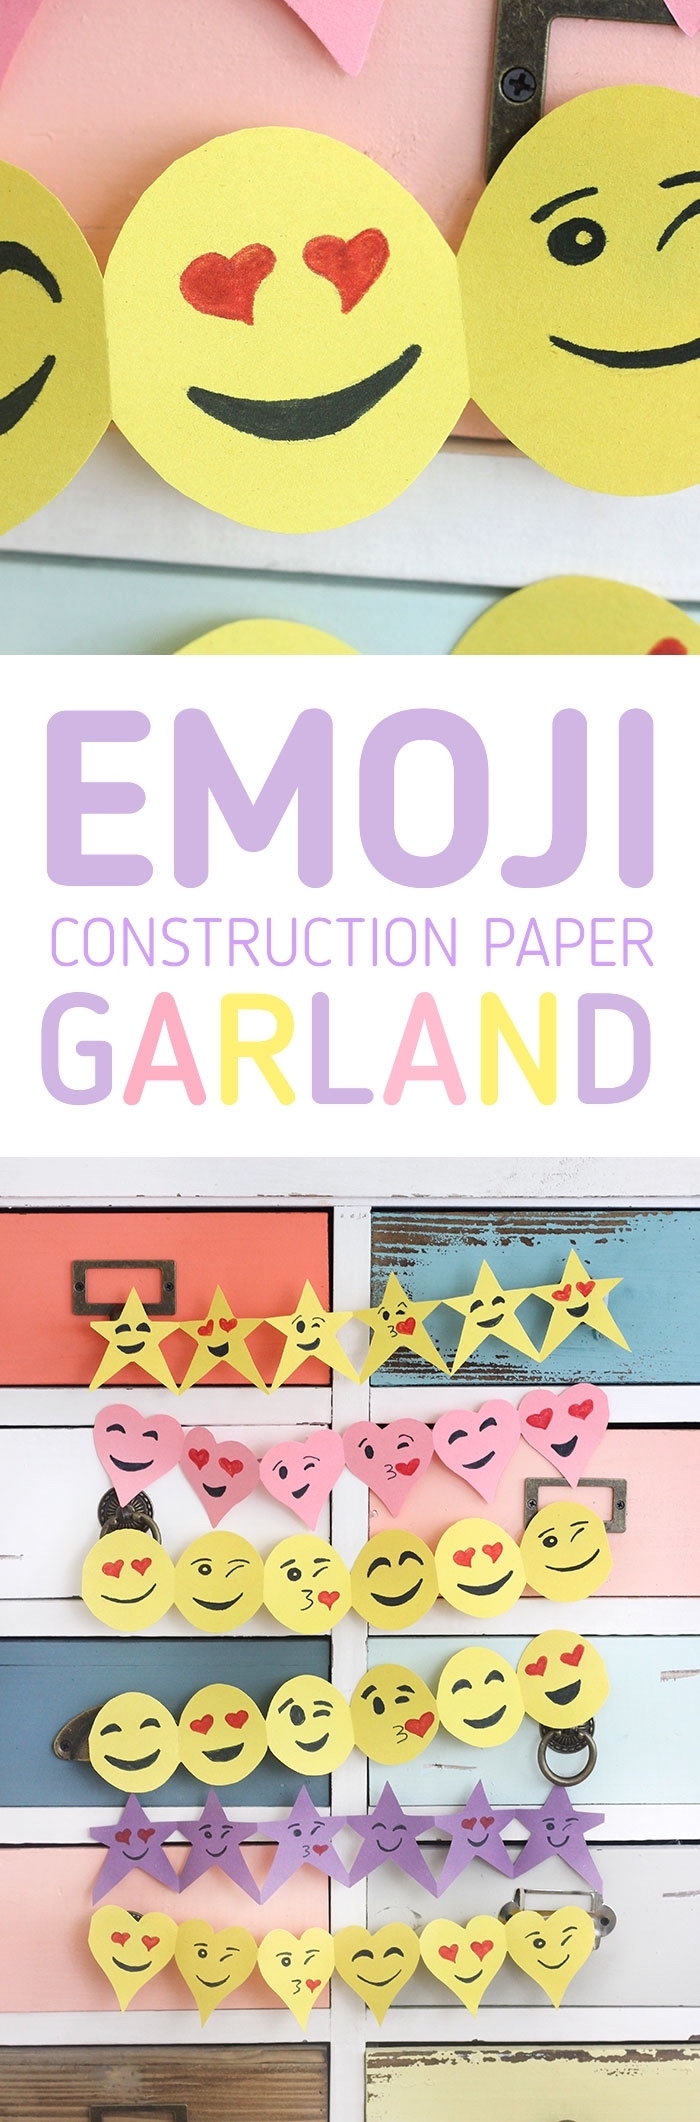 tutoriel pour réaliser une guirlande décorative à design emoji en papier, activité manuelle pour enfants